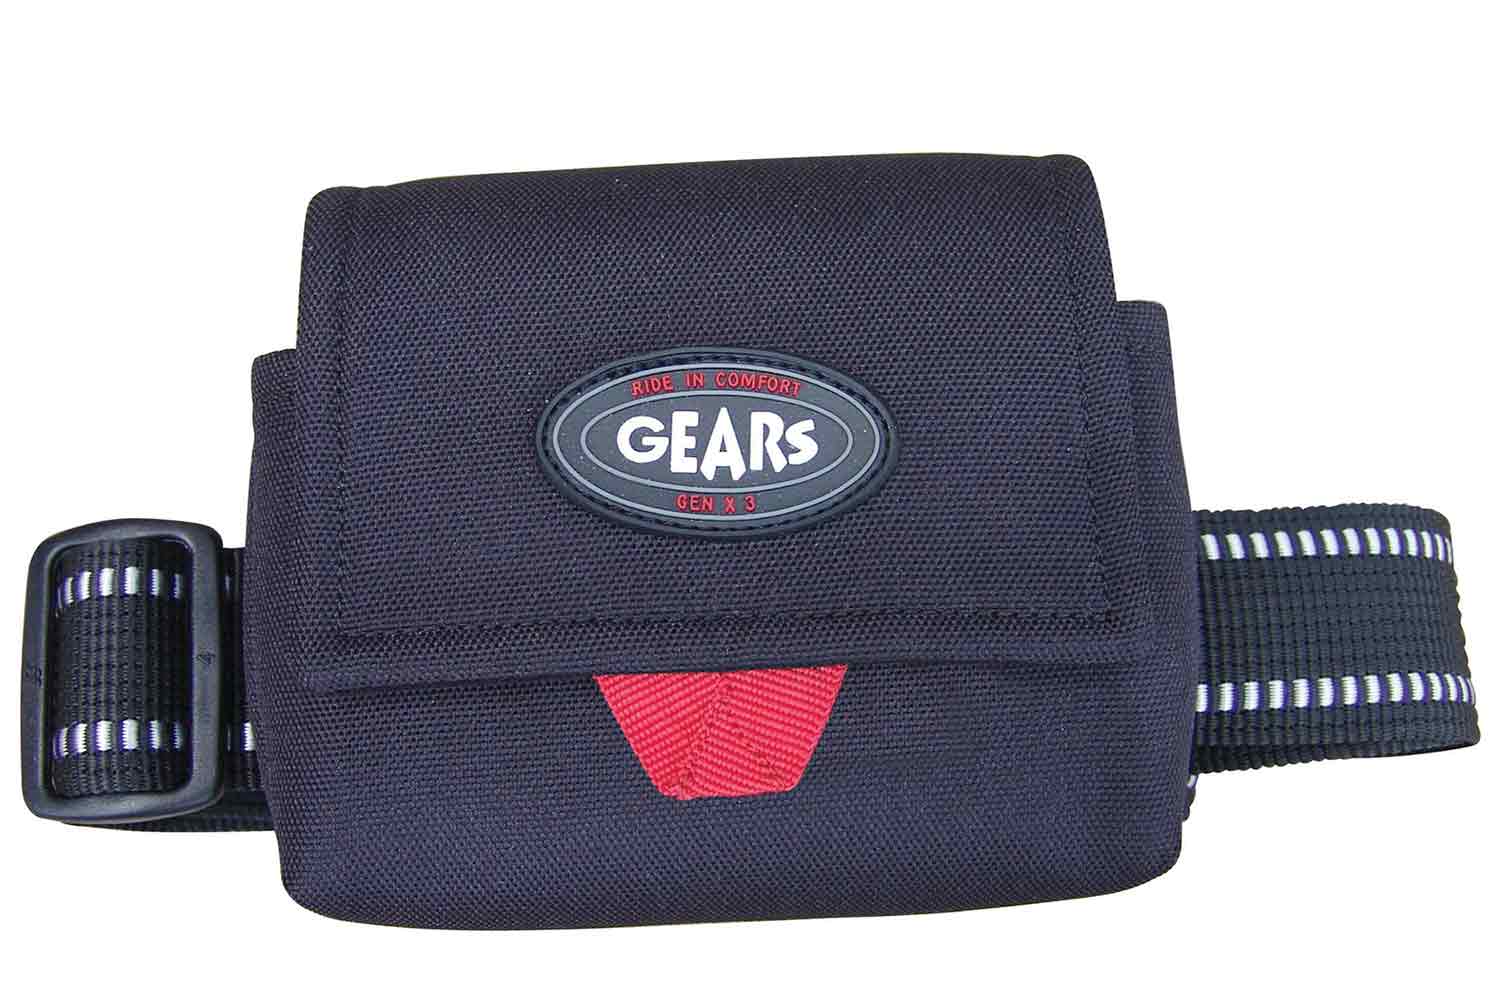 Gears black battery pouch